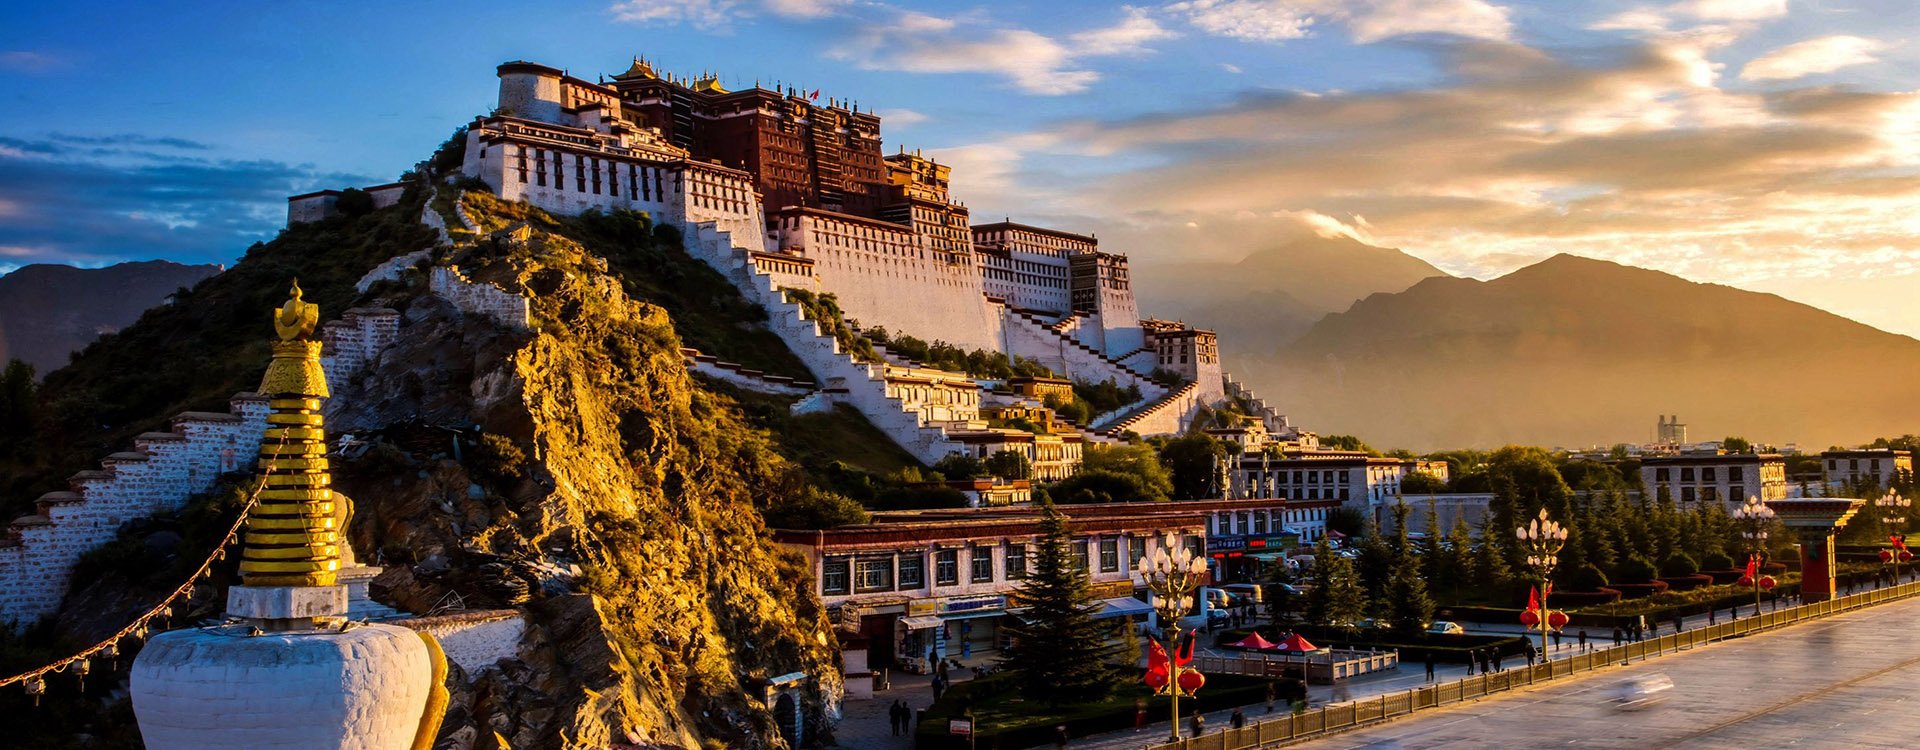 China - Tibet